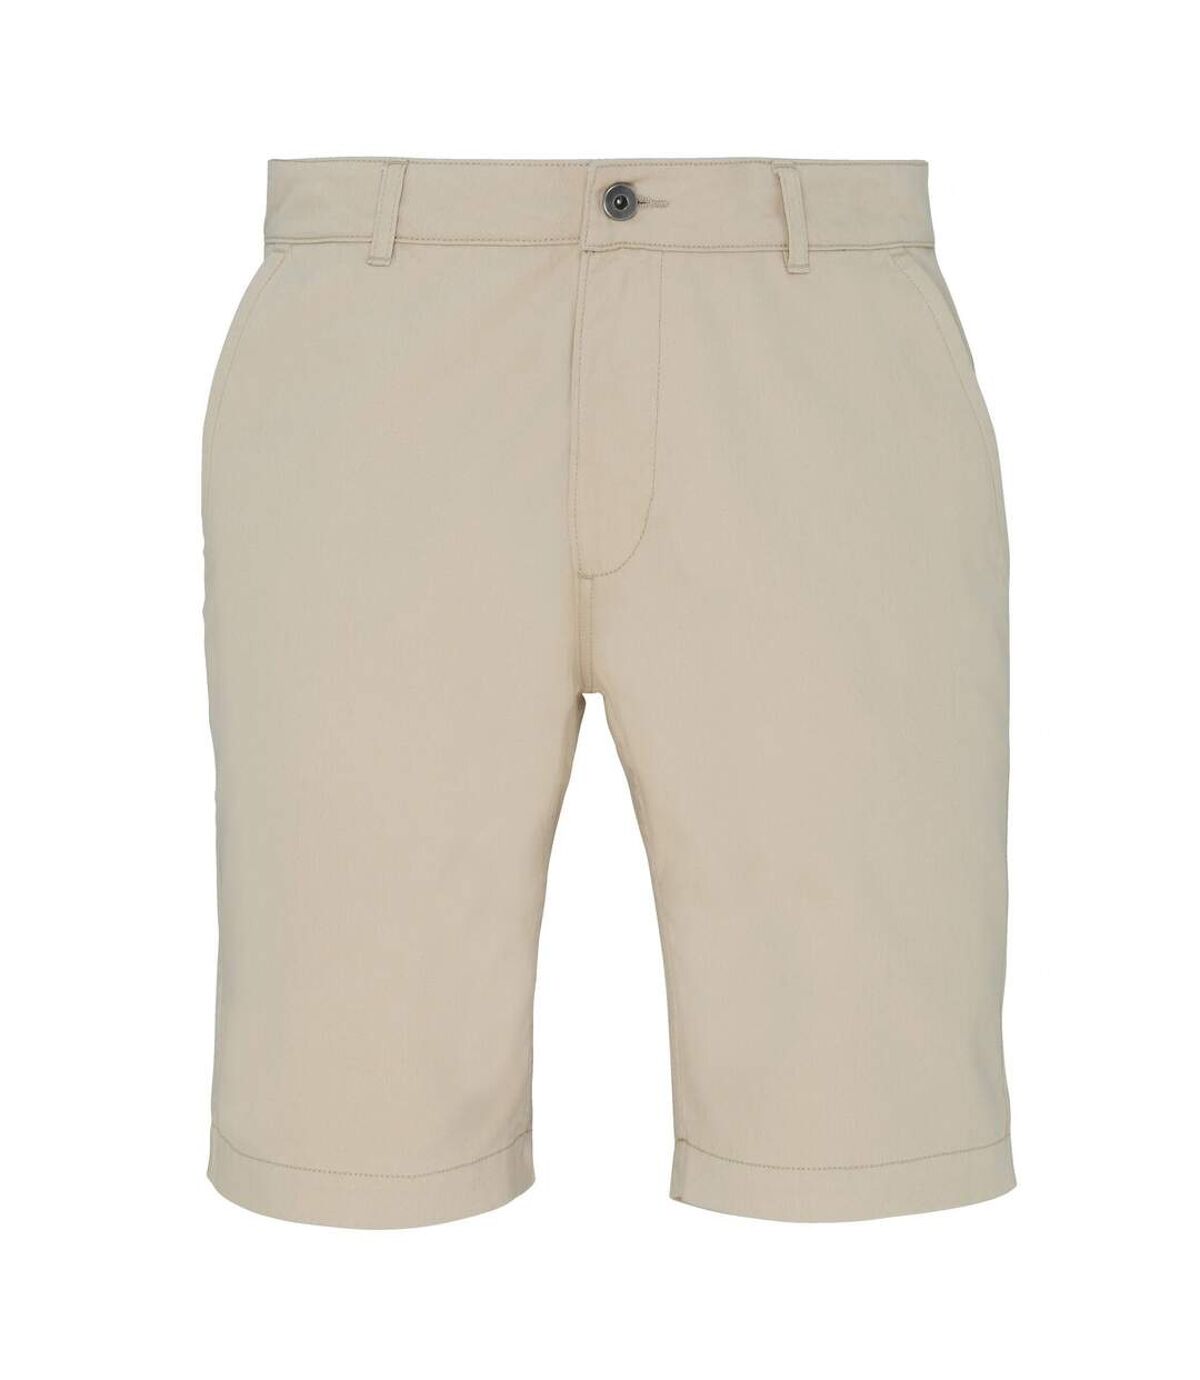 Asquith & Fox Mens Casual Chino Shorts (Natural)